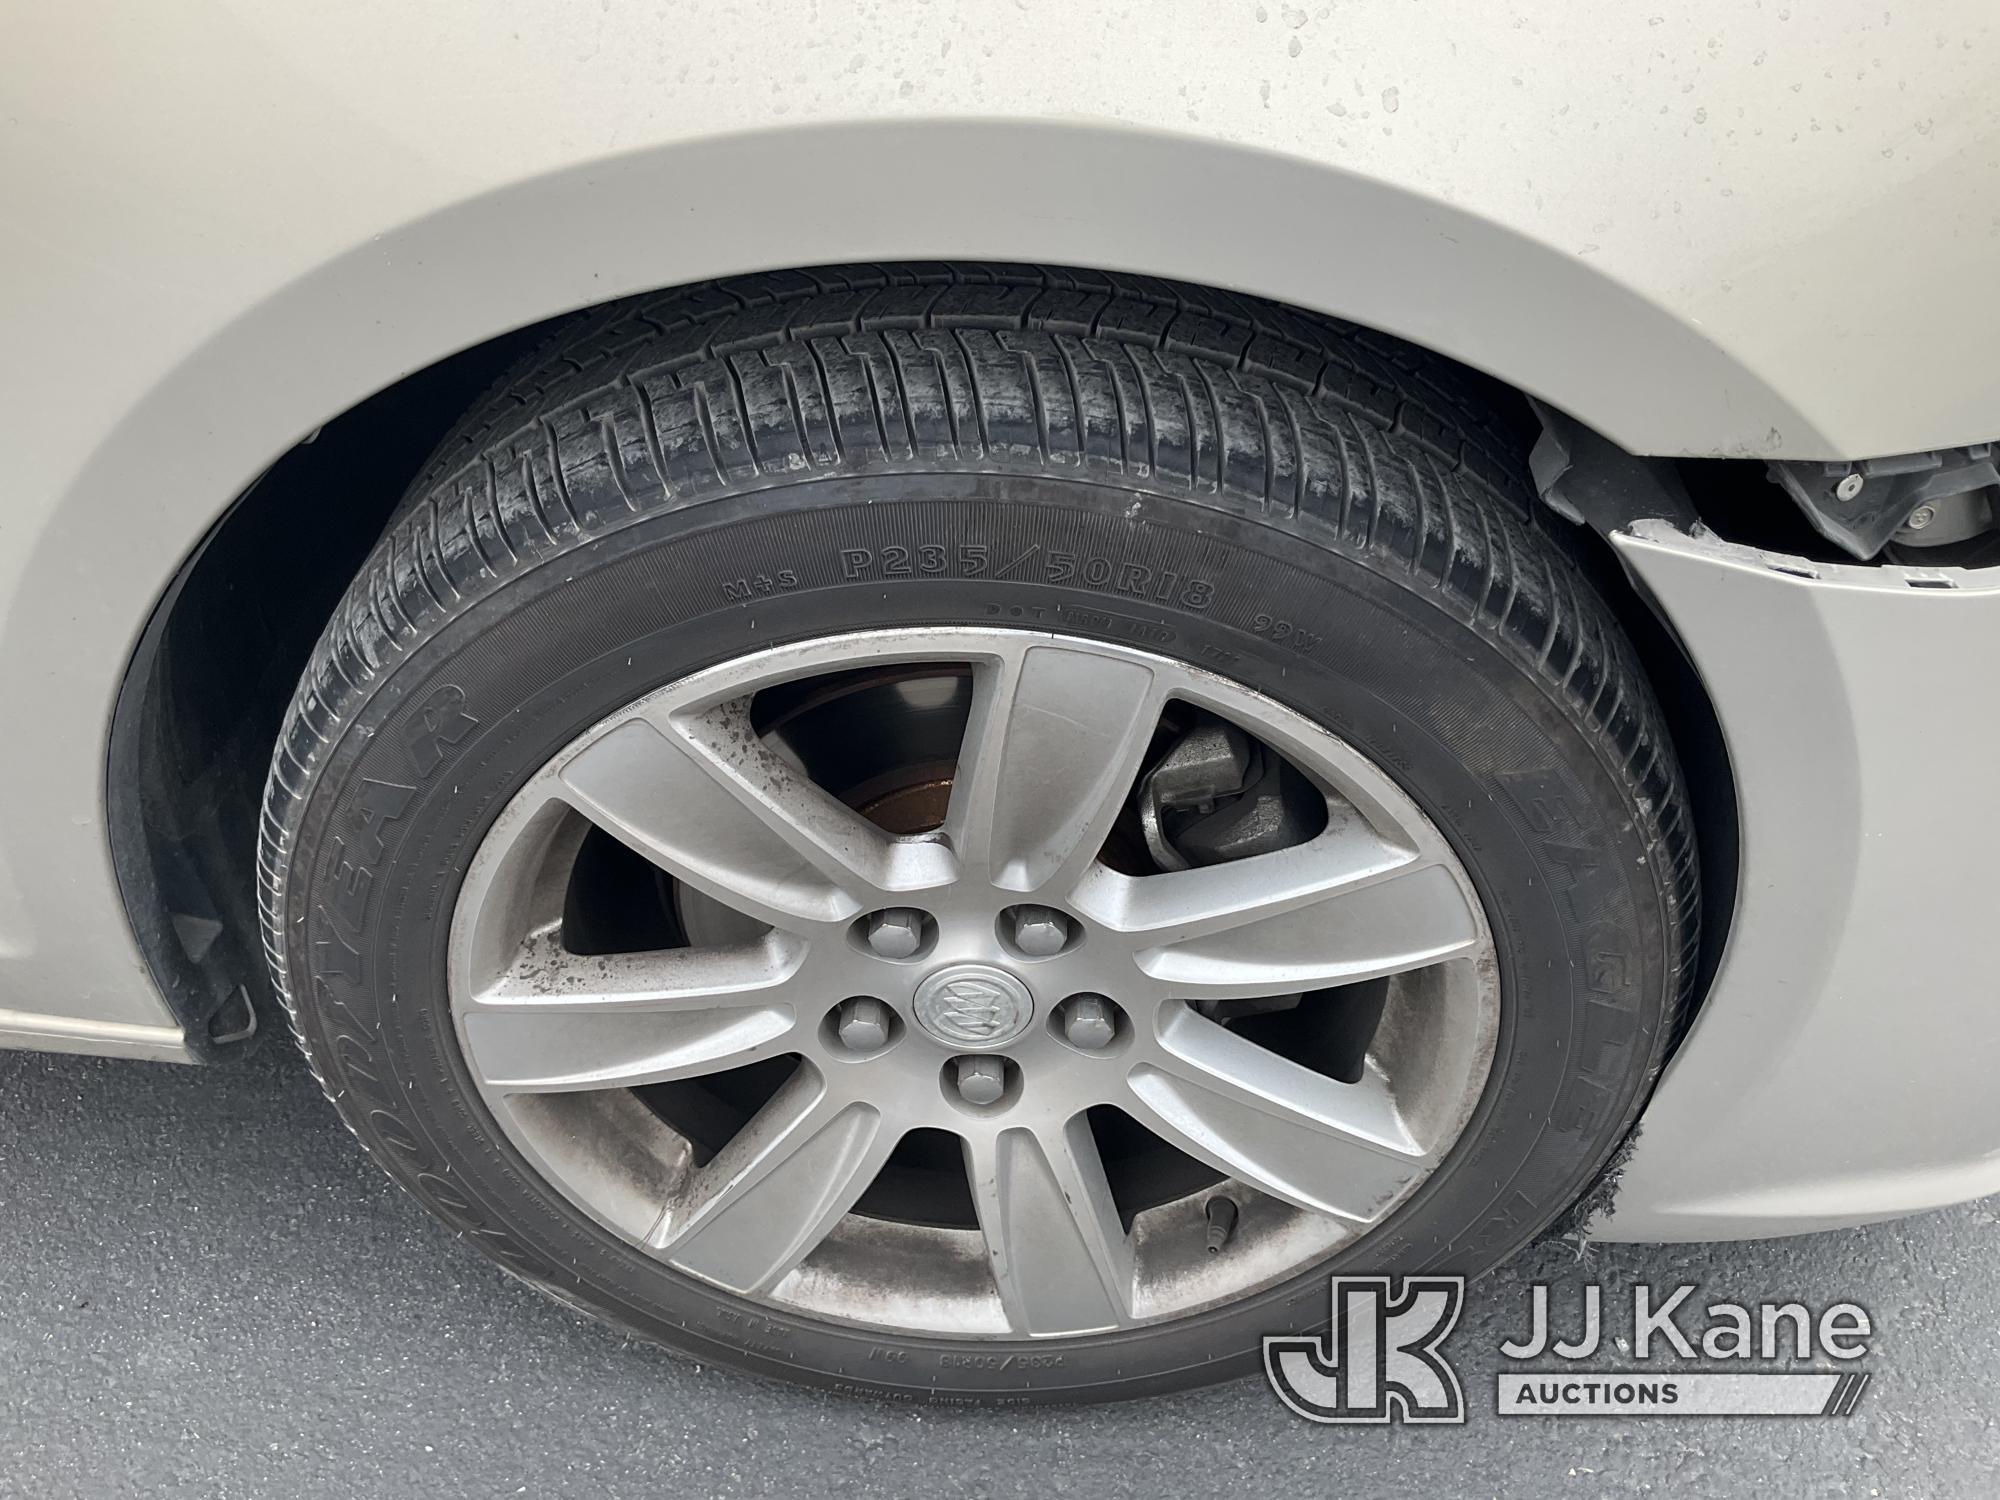 (Jurupa Valley, CA) 2012 Buick LaCrosse 4-Door Sedan Runs, Moves, Air Bag Light On, Front End Damage